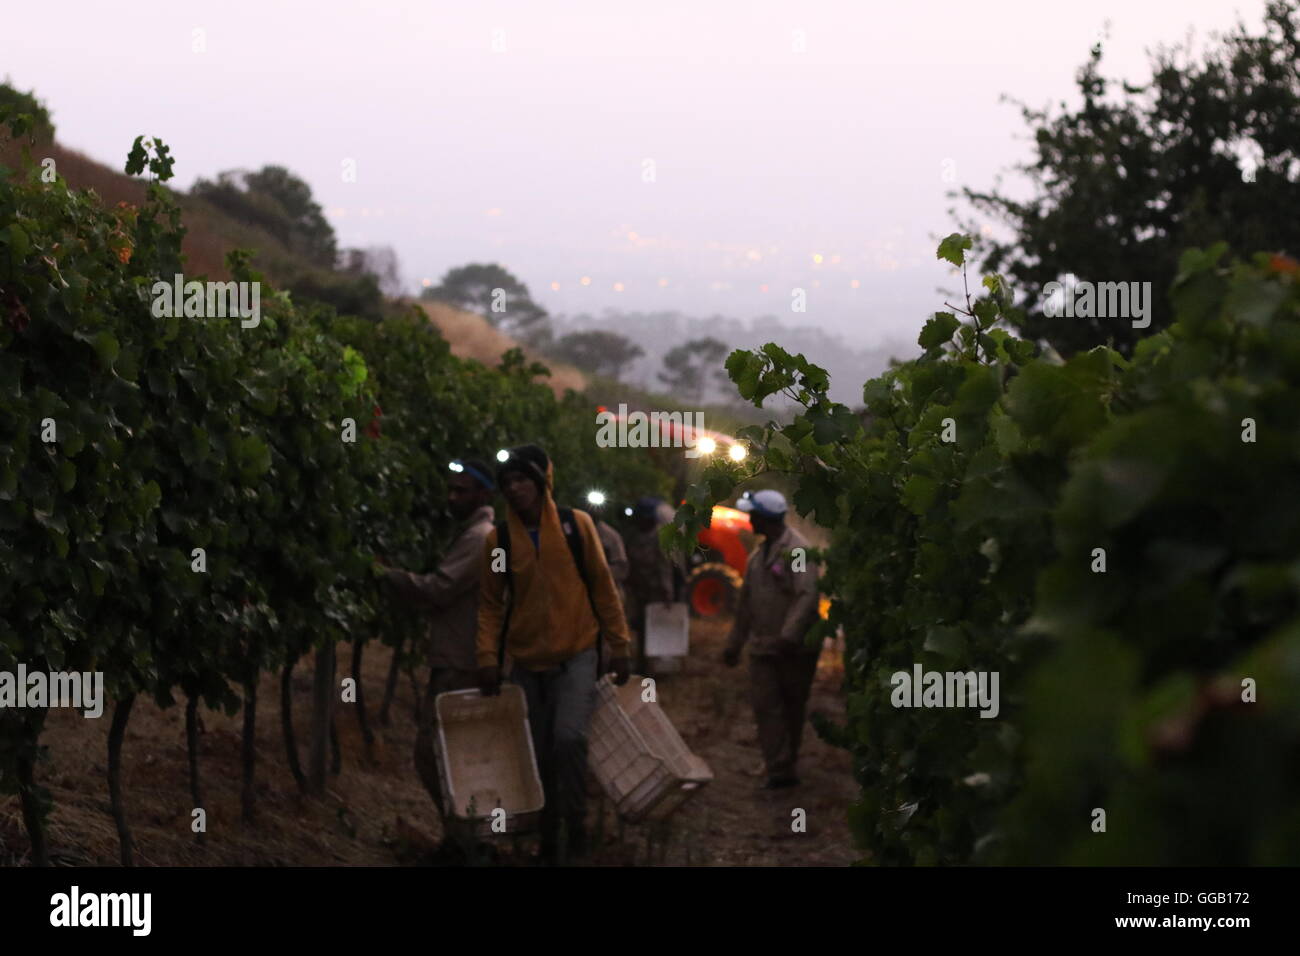 Vendangeurs à l'aube avec la tête des torches et des coffres d'une vigne à vins Klein Constantia, Cape Town, Afrique du Sud Banque D'Images